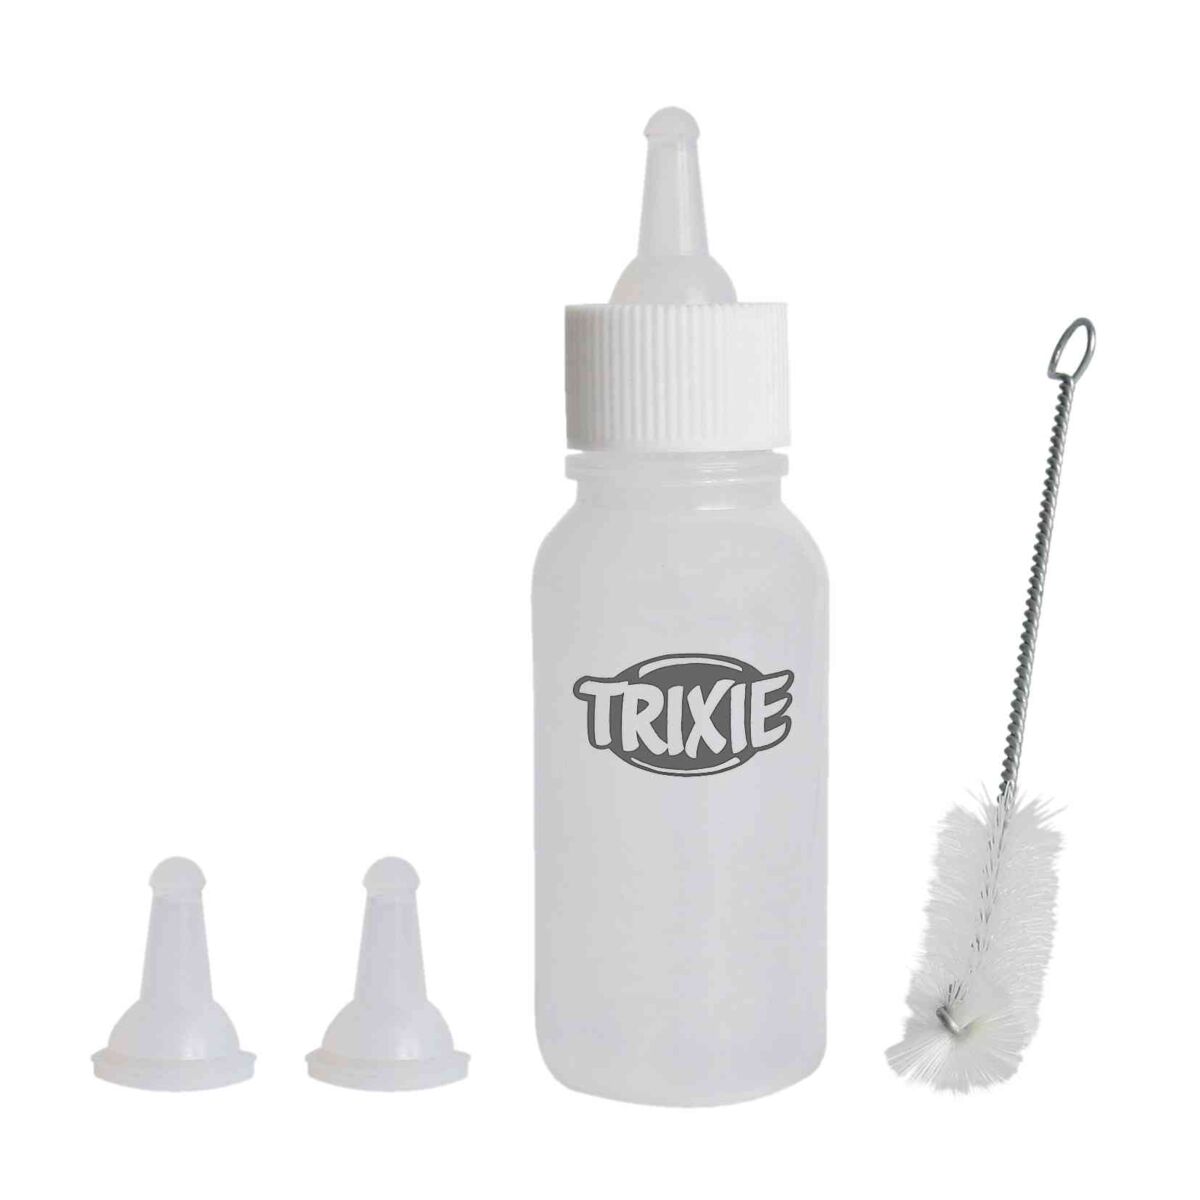 Trixie Saugflaschen Set - klein mit 3 Silikonsaugern, für Katzen und Welpen, 57ml